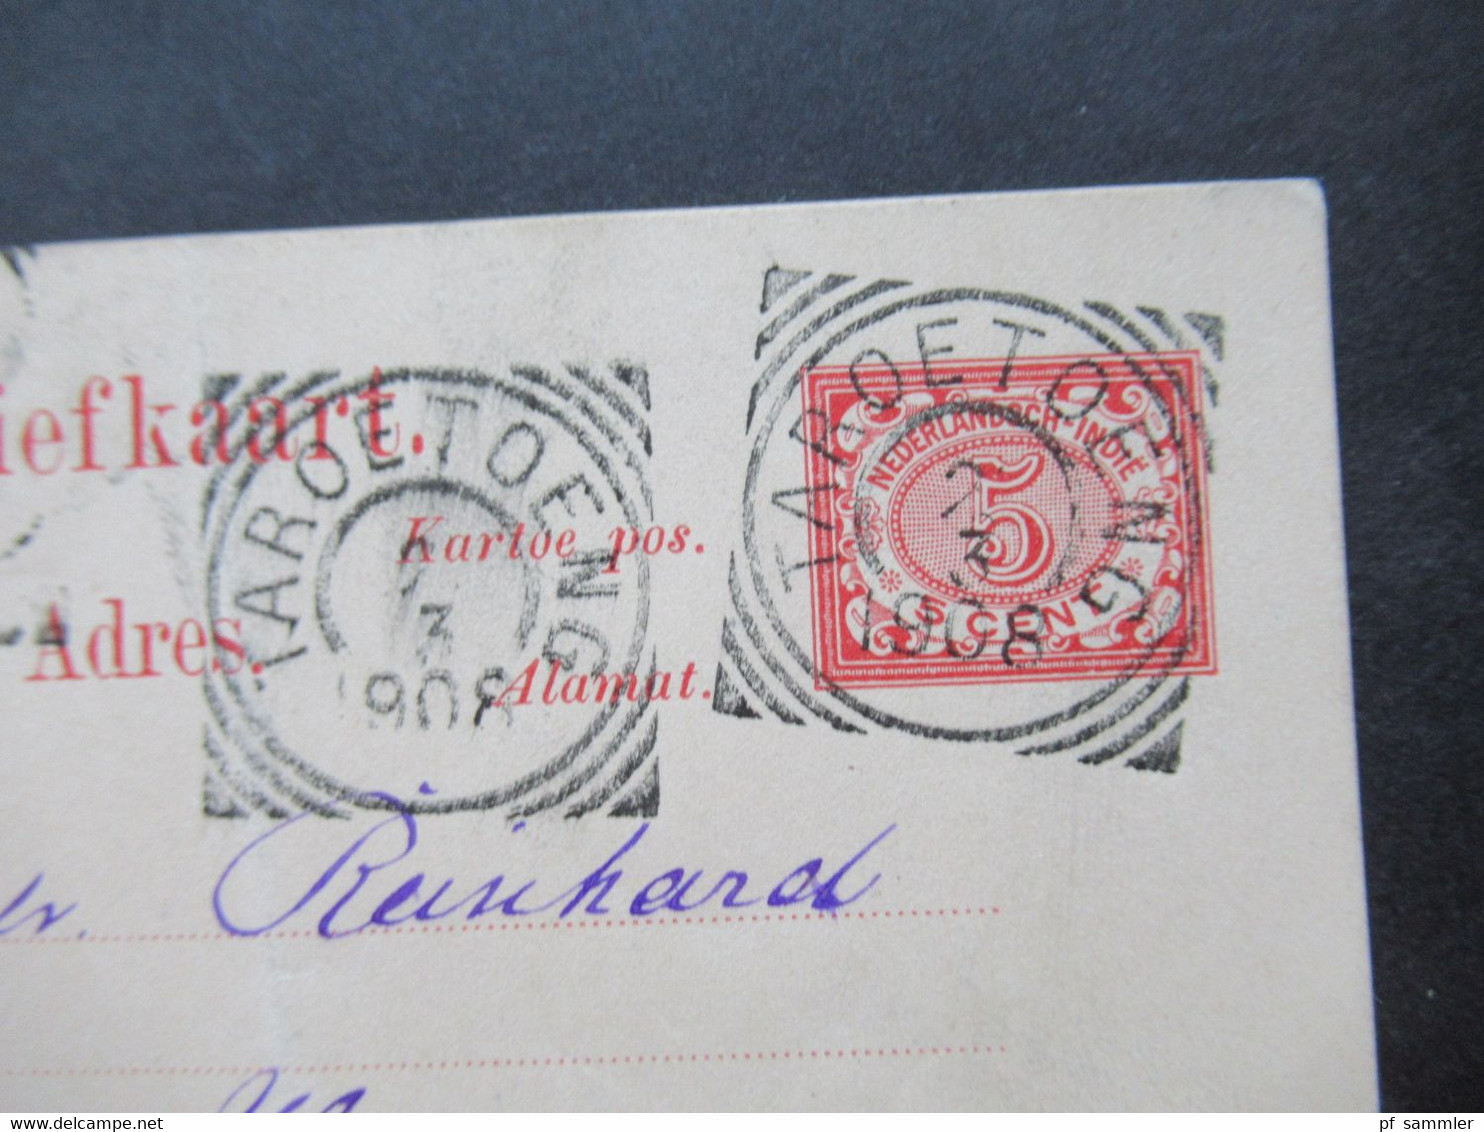 Niederländisch Indien 1908 GA Mit 5 Stempeln U.a. Taroetoeng (2) Nach Hemer Gesendet Anfrage Nach Photopapier 48x64 - Netherlands Indies